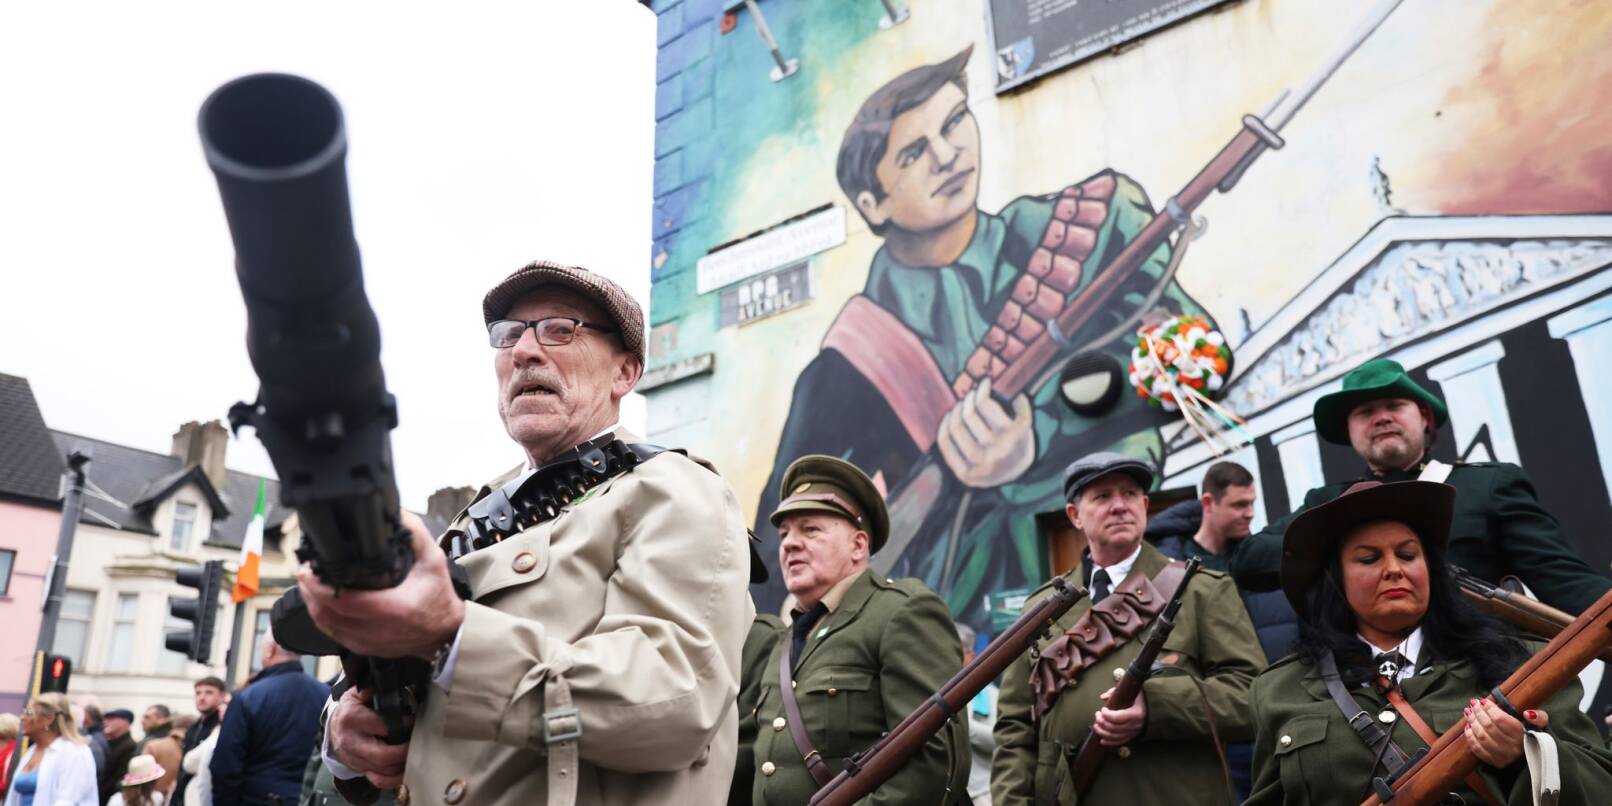 Irische Republikaner in Belfast erinnern mit einer Parade an den Osteraufstand von 1916 zu erinnern - dabei tragen sie alte IRA-Uniformen im Rahmen einer Parade in Belfast. Damals starteten Nationalisten einen bewaffneten Aufstand gegen die britische Herrschaft in Irland.